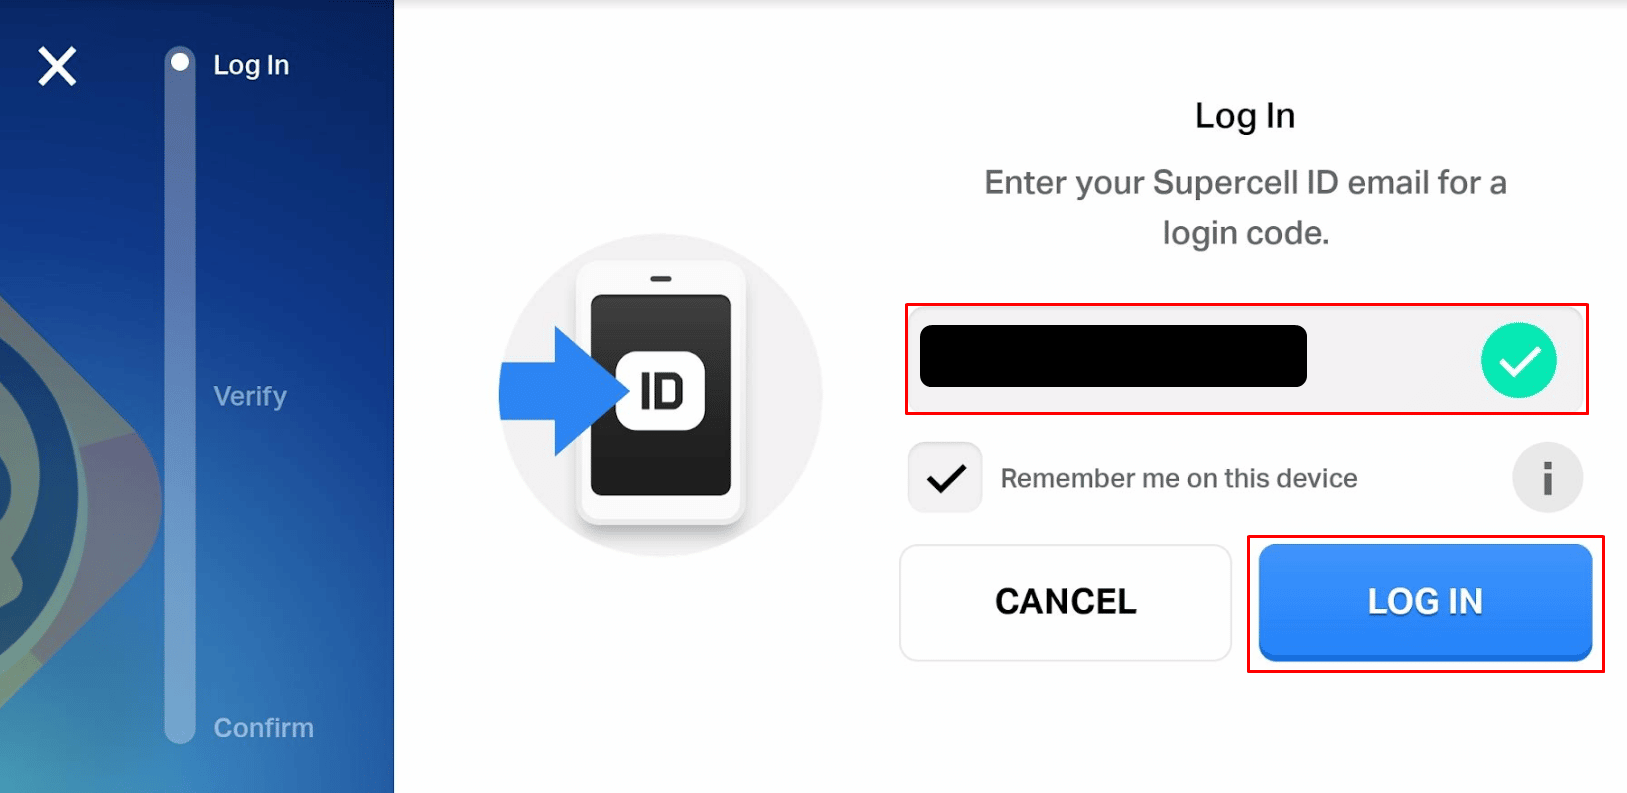 Введите учетные данные для входа в свой Supercell ID, связанный с вашей предыдущей учетной записью, и нажмите «ВОЙТИ».